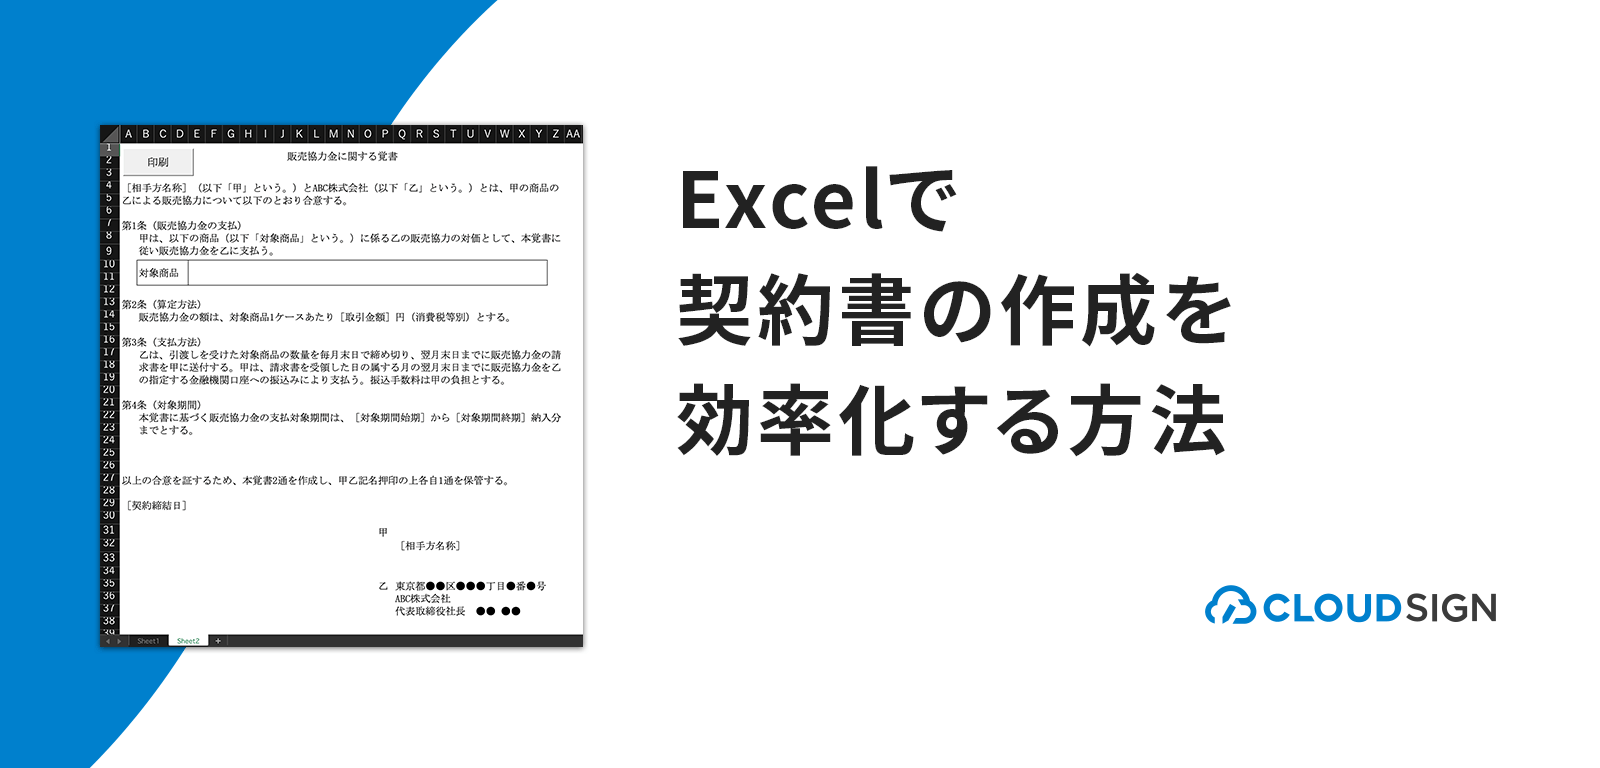 Excelで契約書の作成を効率化する方法